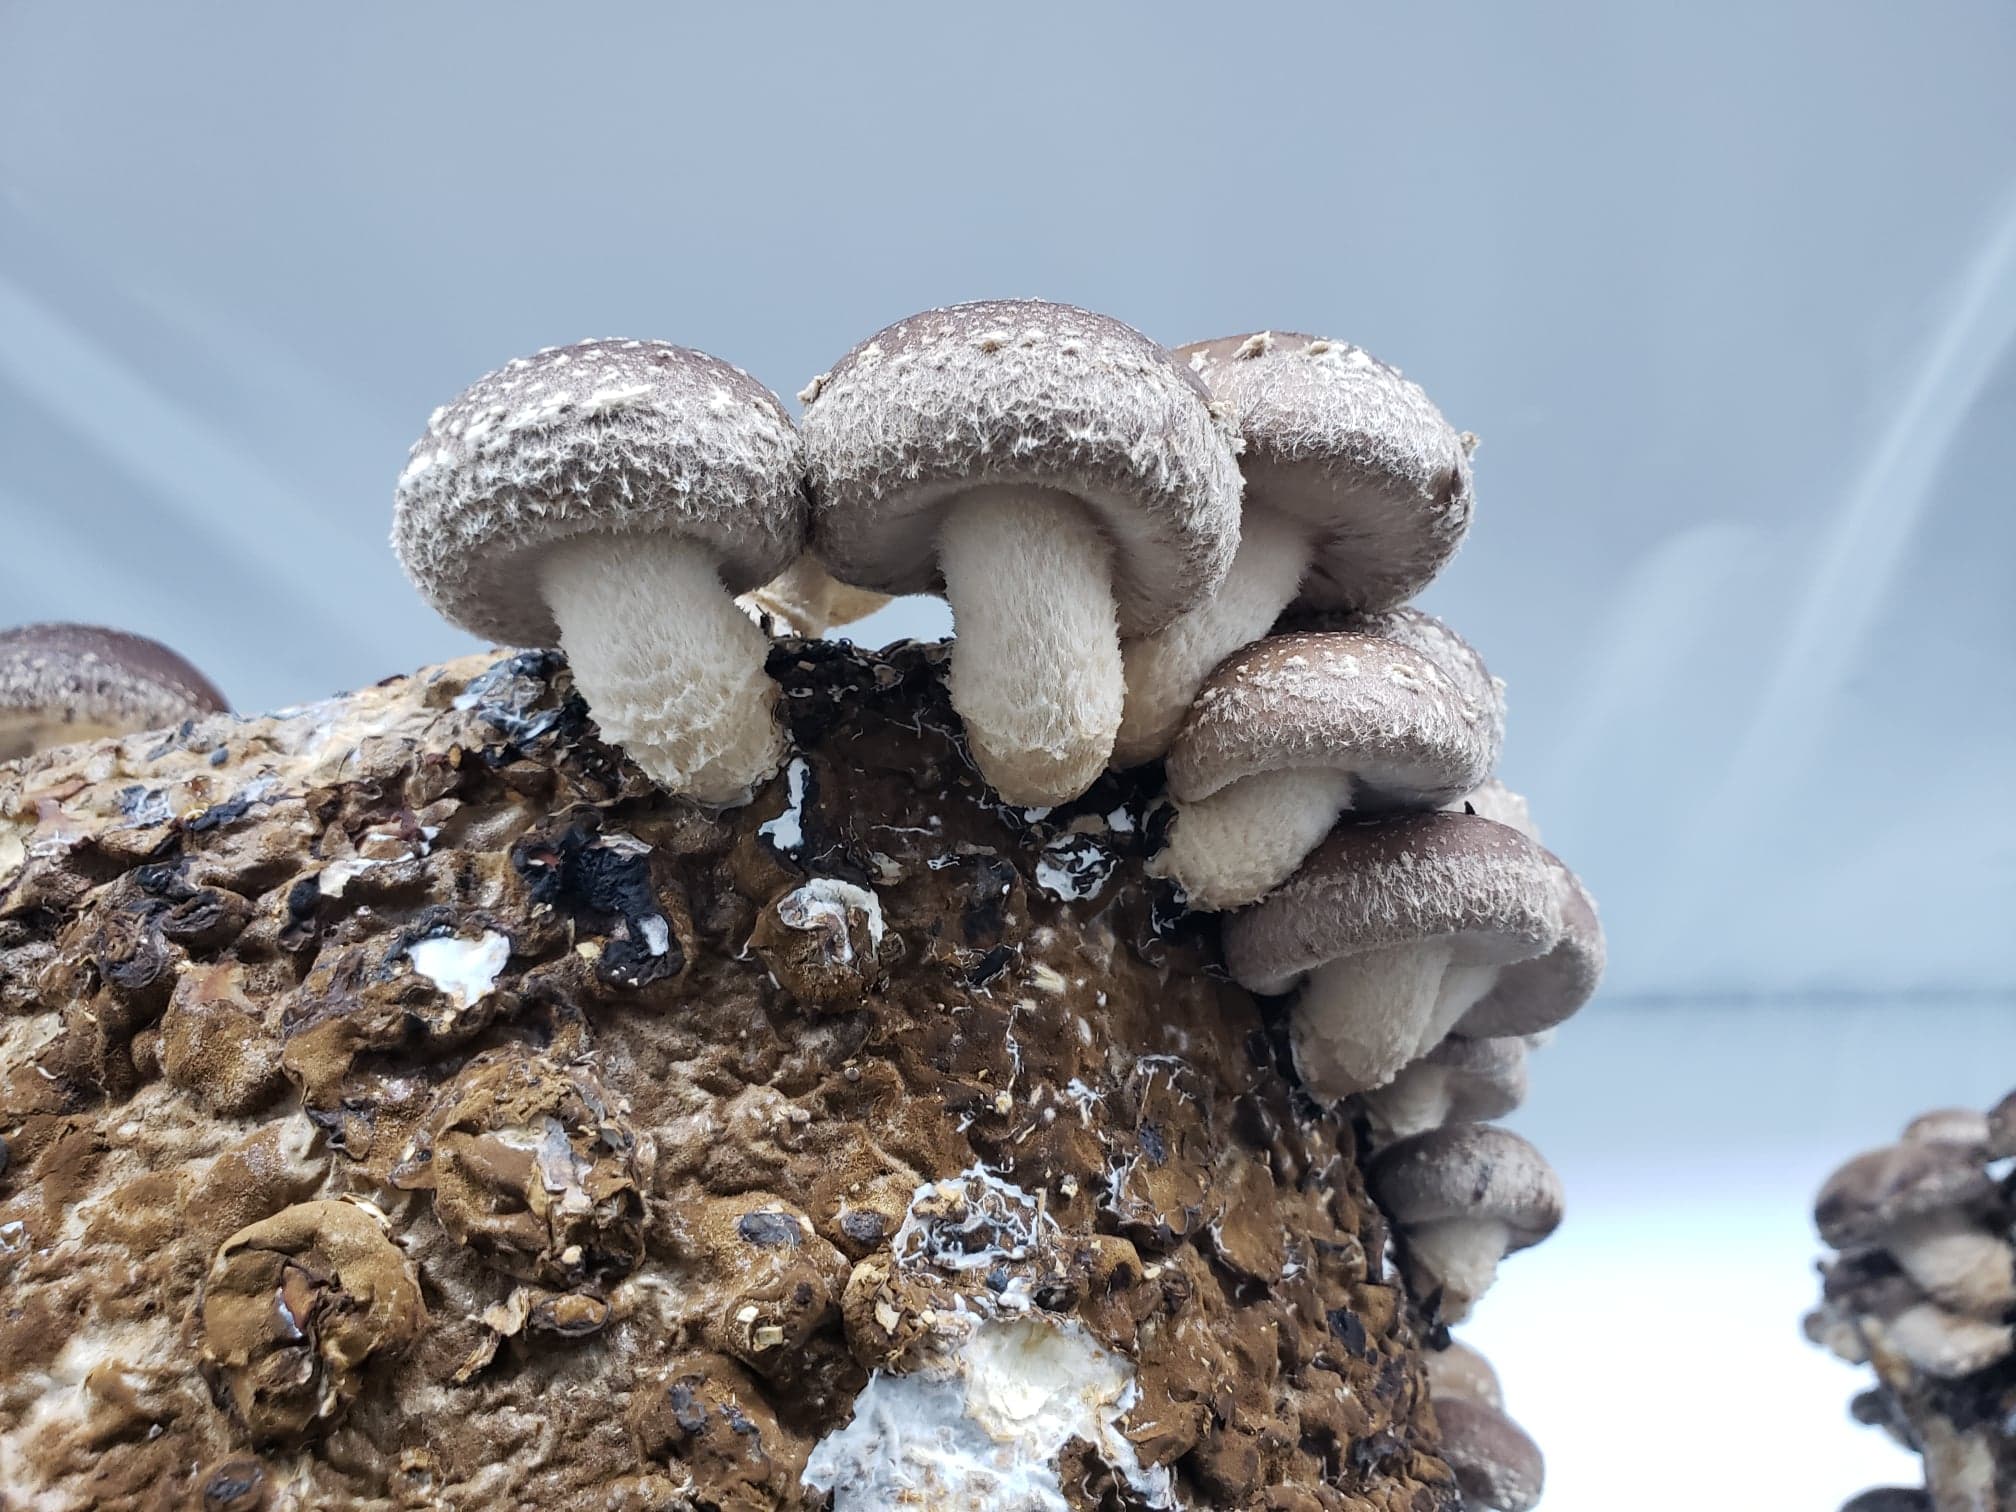 Shiitake Mushroom Growing Kit FREE SHIPPING 